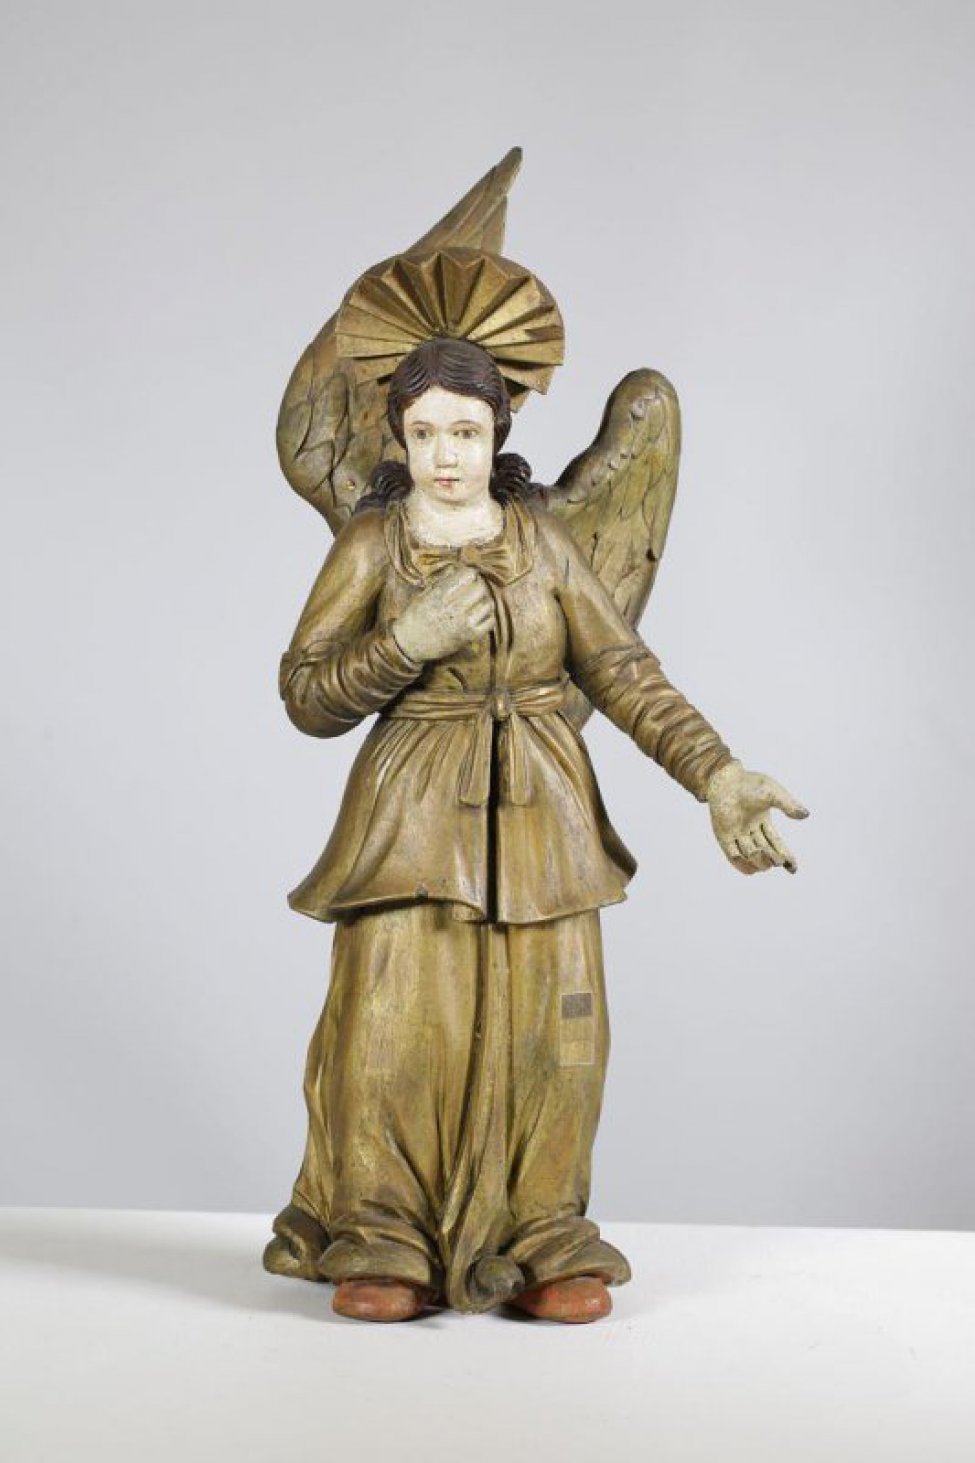 Ангел крайний слева от колонны изображен с протянутыми вперед и влево руками, лицо повернуто вправо; в правой руке держит копье. Ангел в двух позолоченных одеждах. Сзади - два отдельно вырезанных крыла, позолоченных с лицевой стороны, правое крыло поднято вверх, левое - опущено. На голове - позолоченный нимб с рельефно вырезанными лучами.